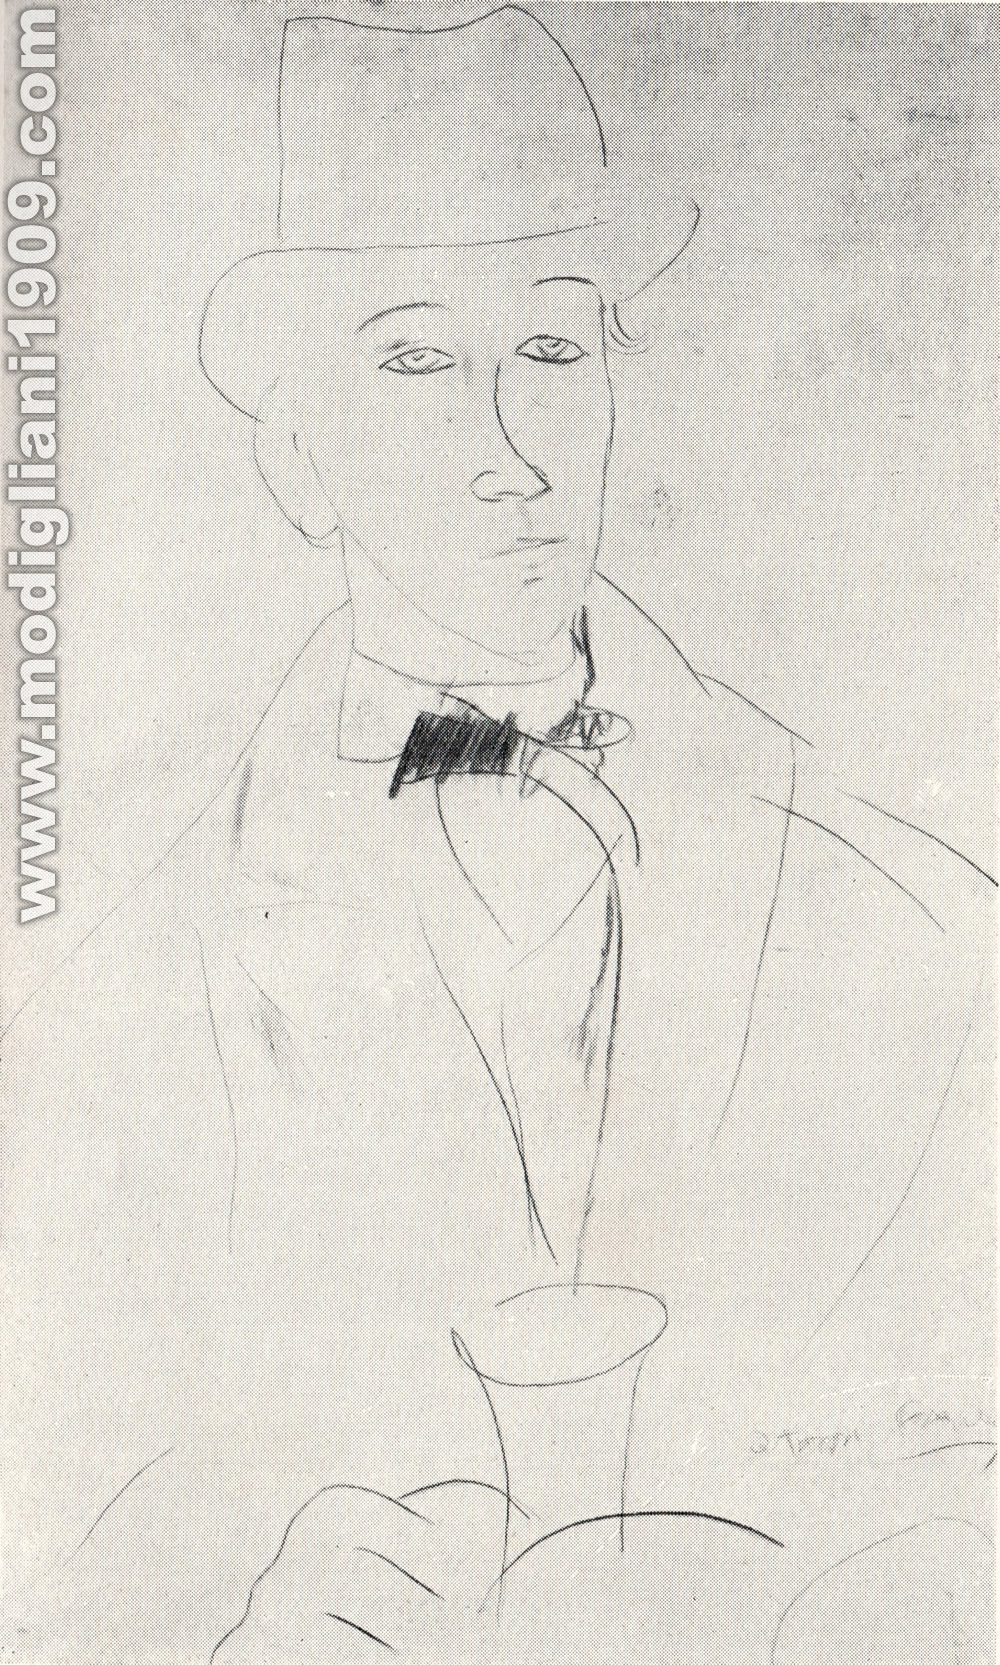 Amedeo Modigliani - Ritratto di Othon Friesz - 1918 - Parigi. Collezione Zborowski